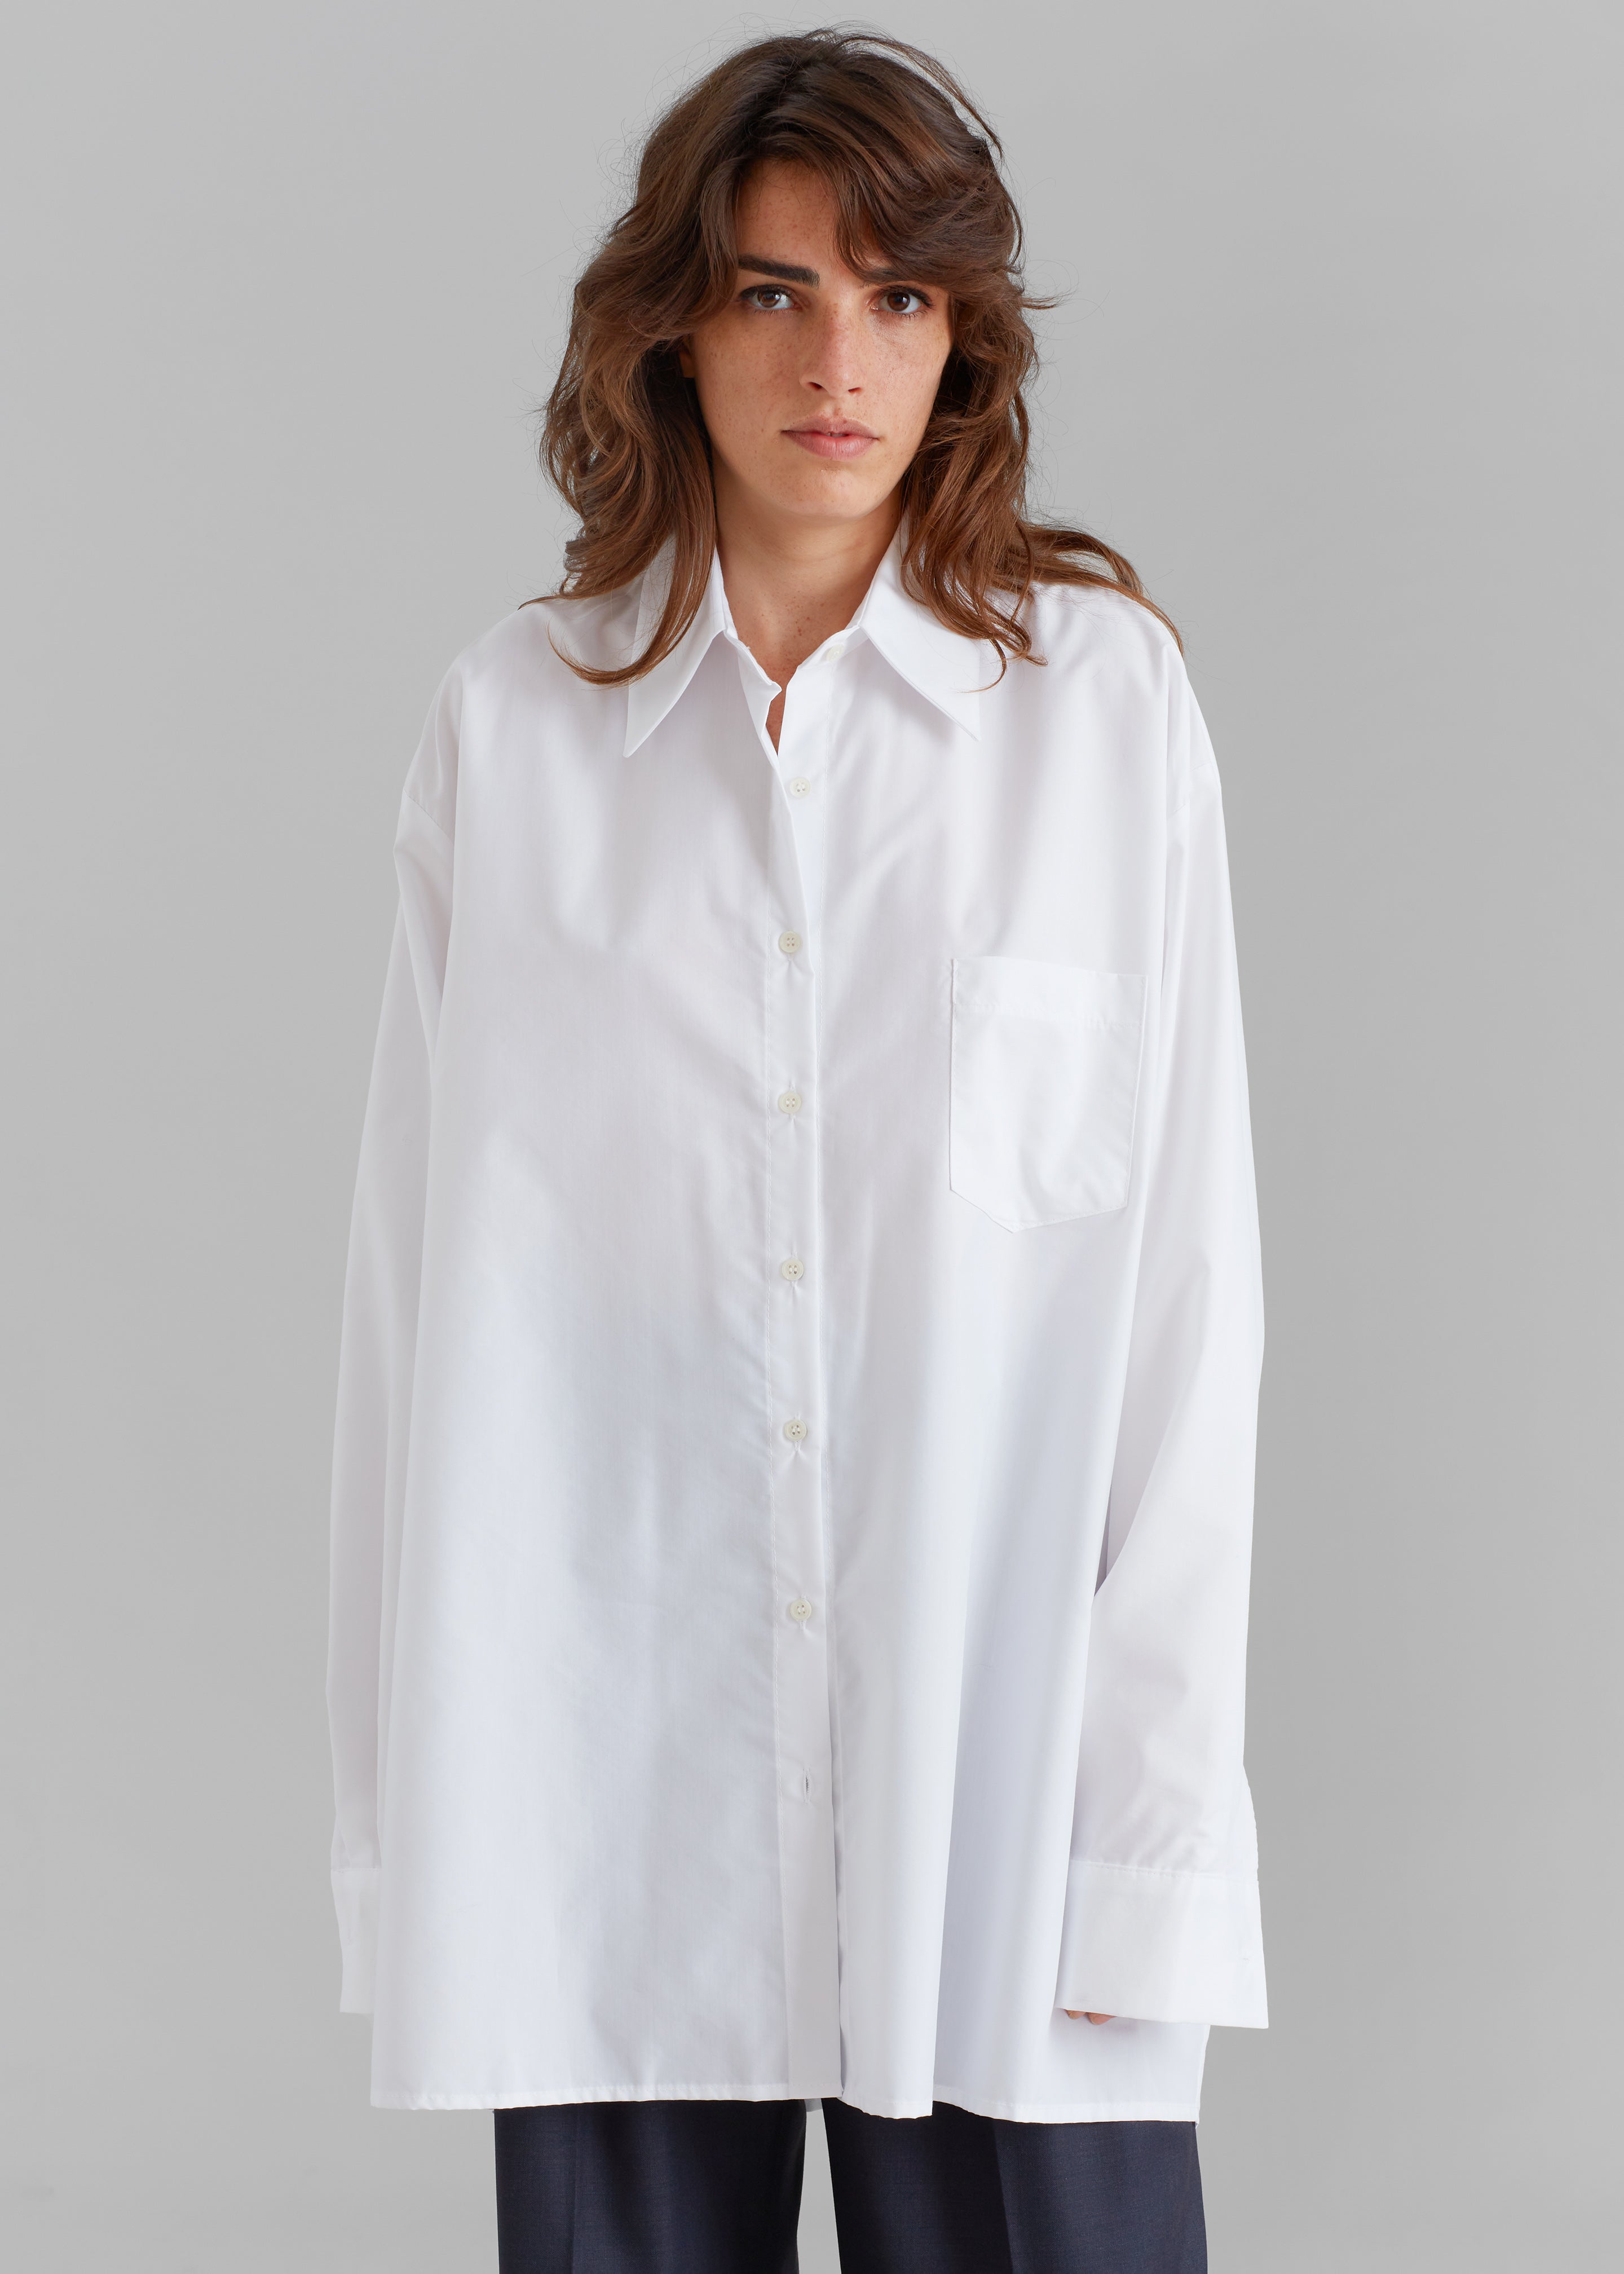 Jany Tie-Neck Shirt - White - 3